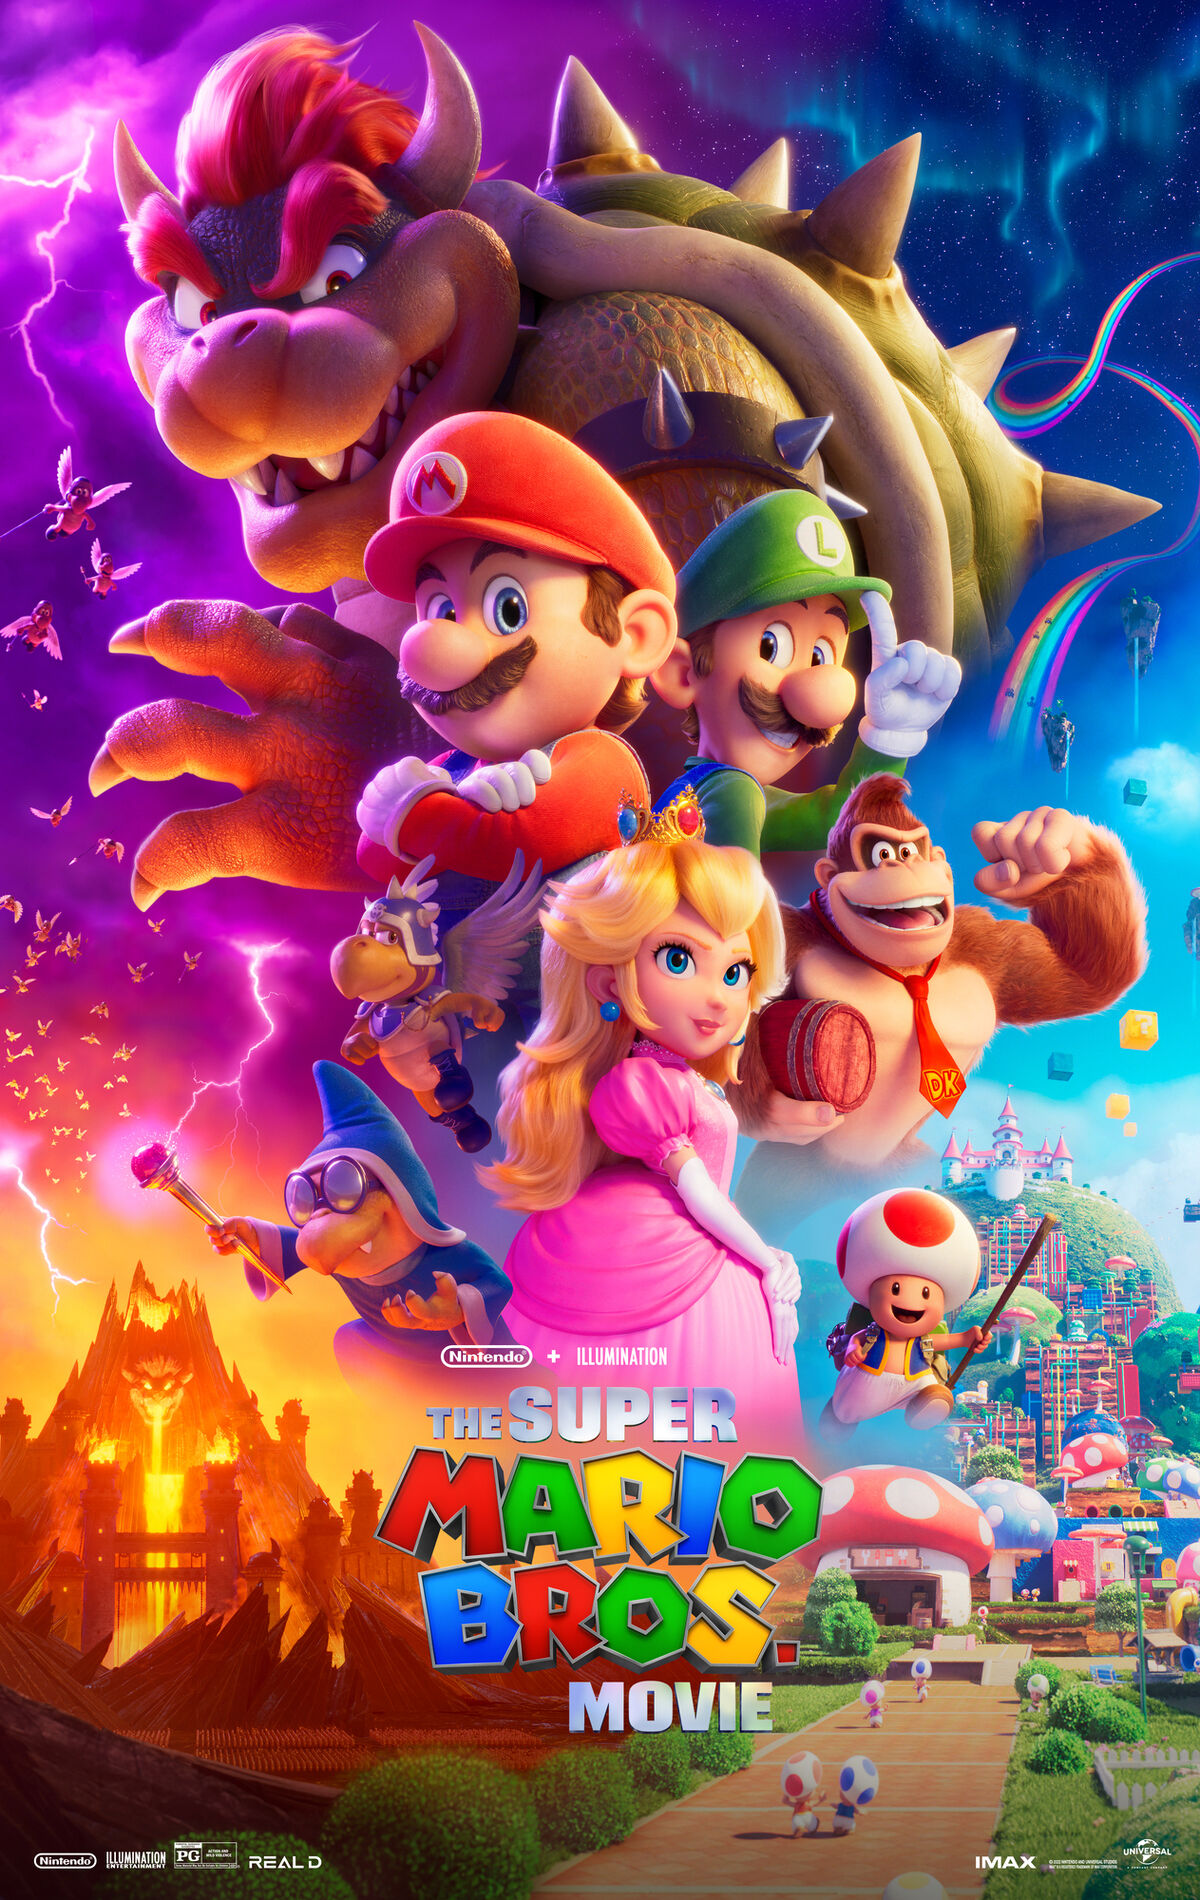 Gallery:The Super Mario Bros. Movie - Super Mario Wiki, the Mario